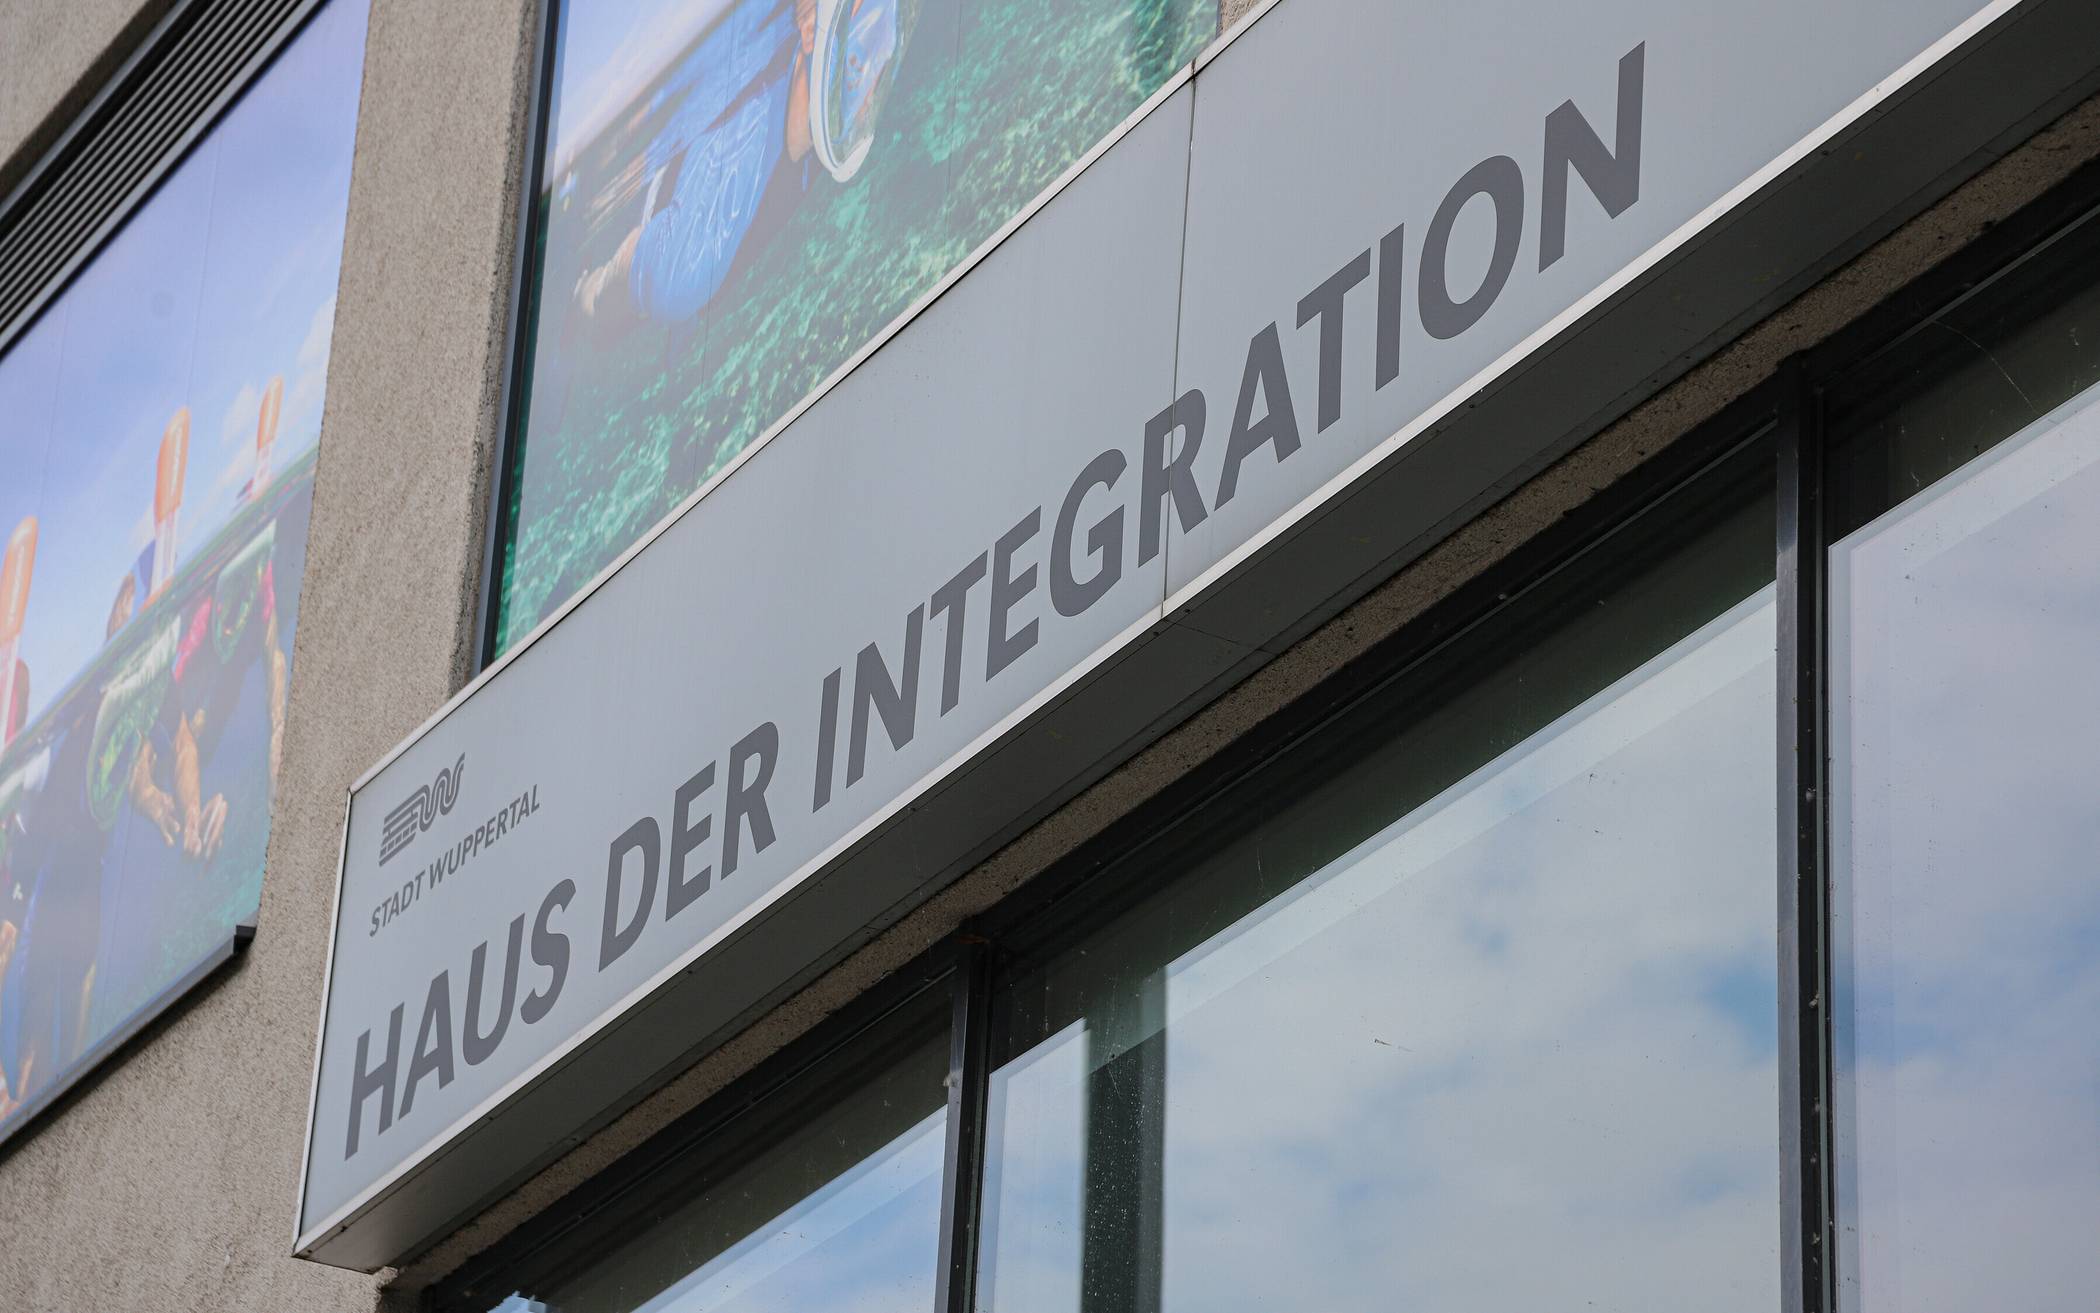 „Integration in Wuppertal – alles auf einen Blick!“